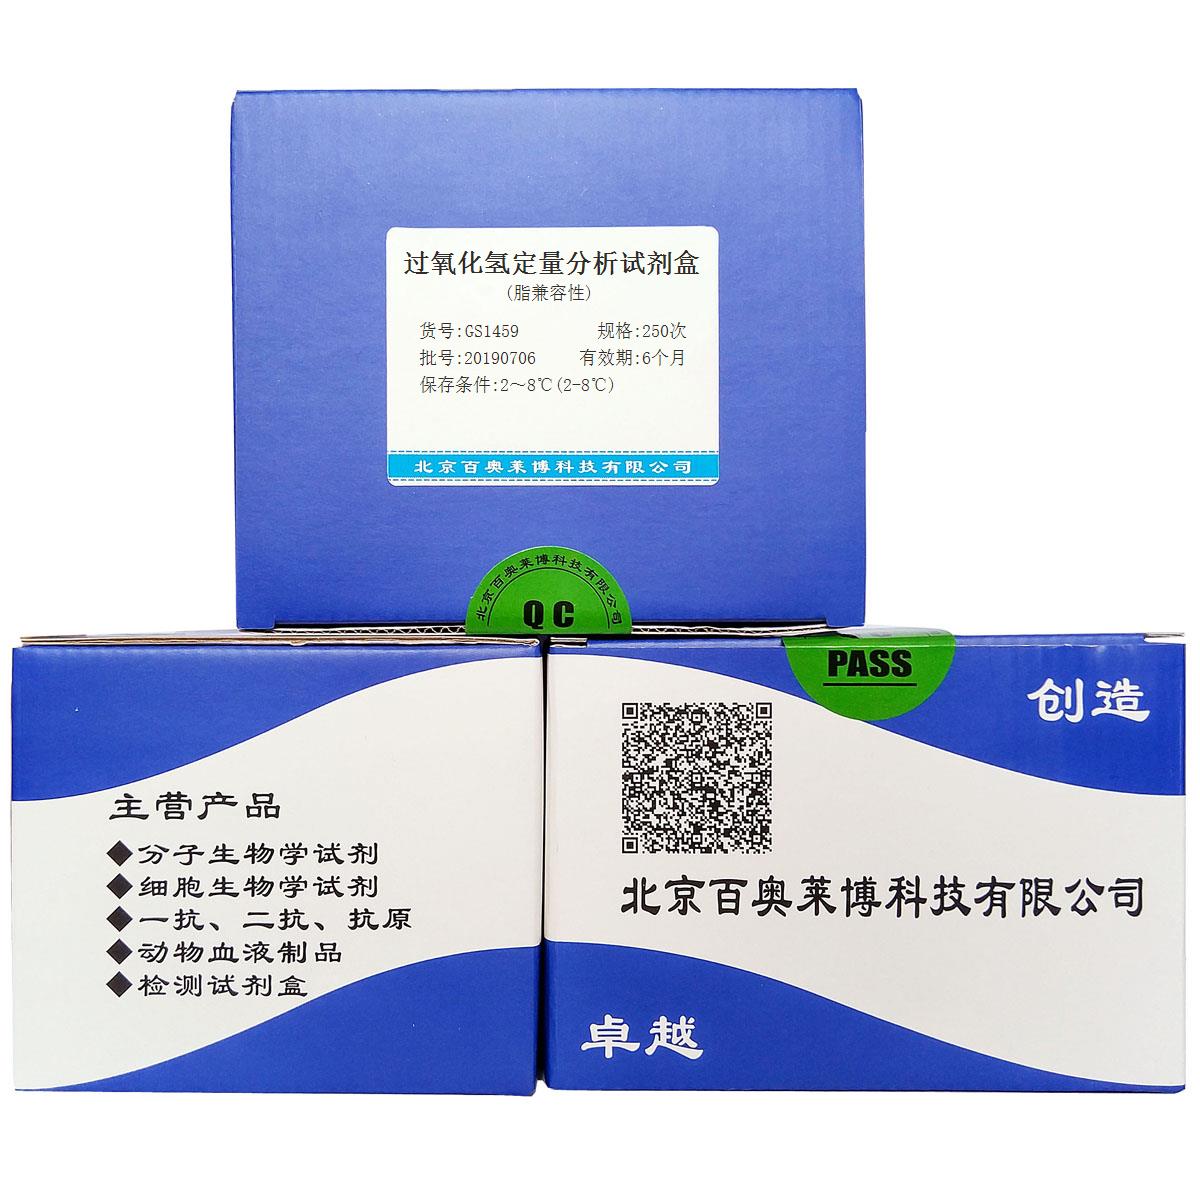 过氧化氢定量分析试剂盒(脂兼容性)北京品牌